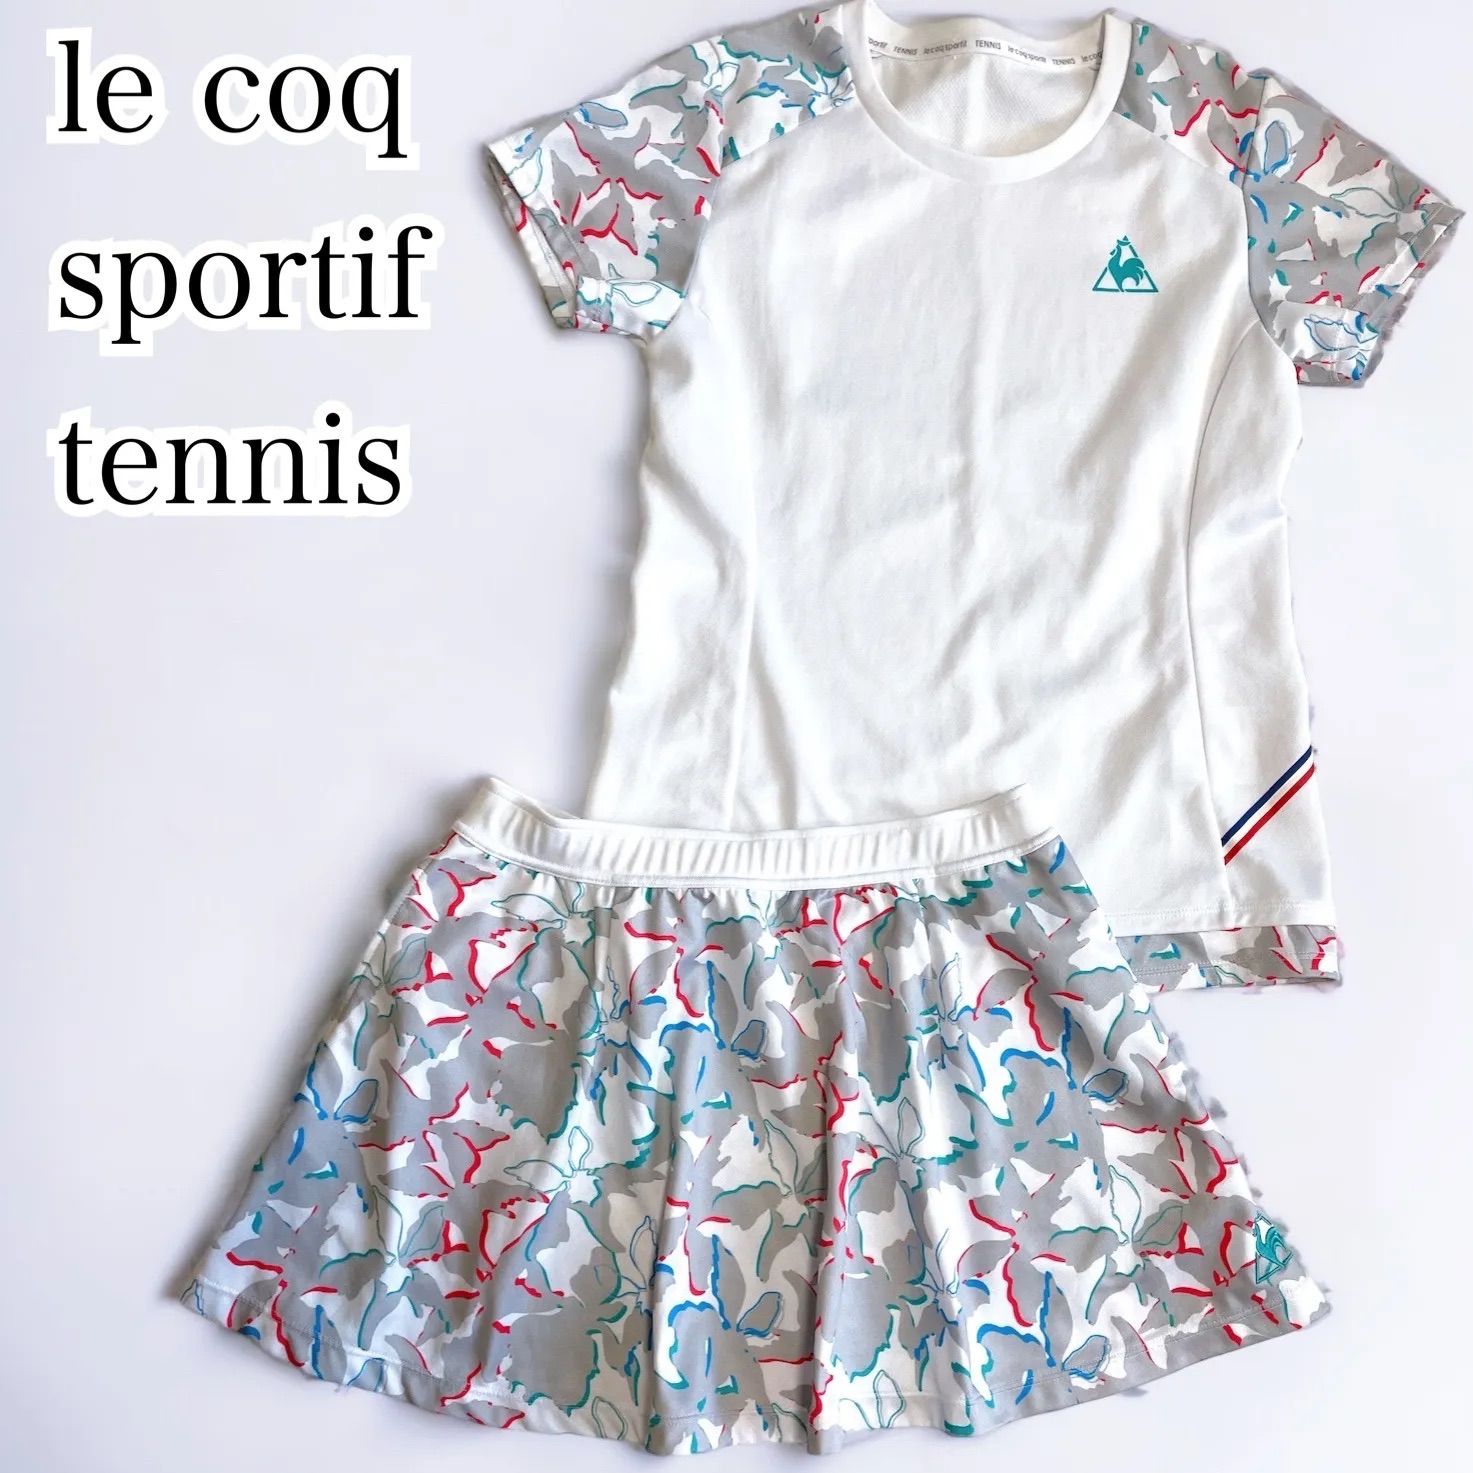 le coq sportif tennis ルコック テニスウェア 上下